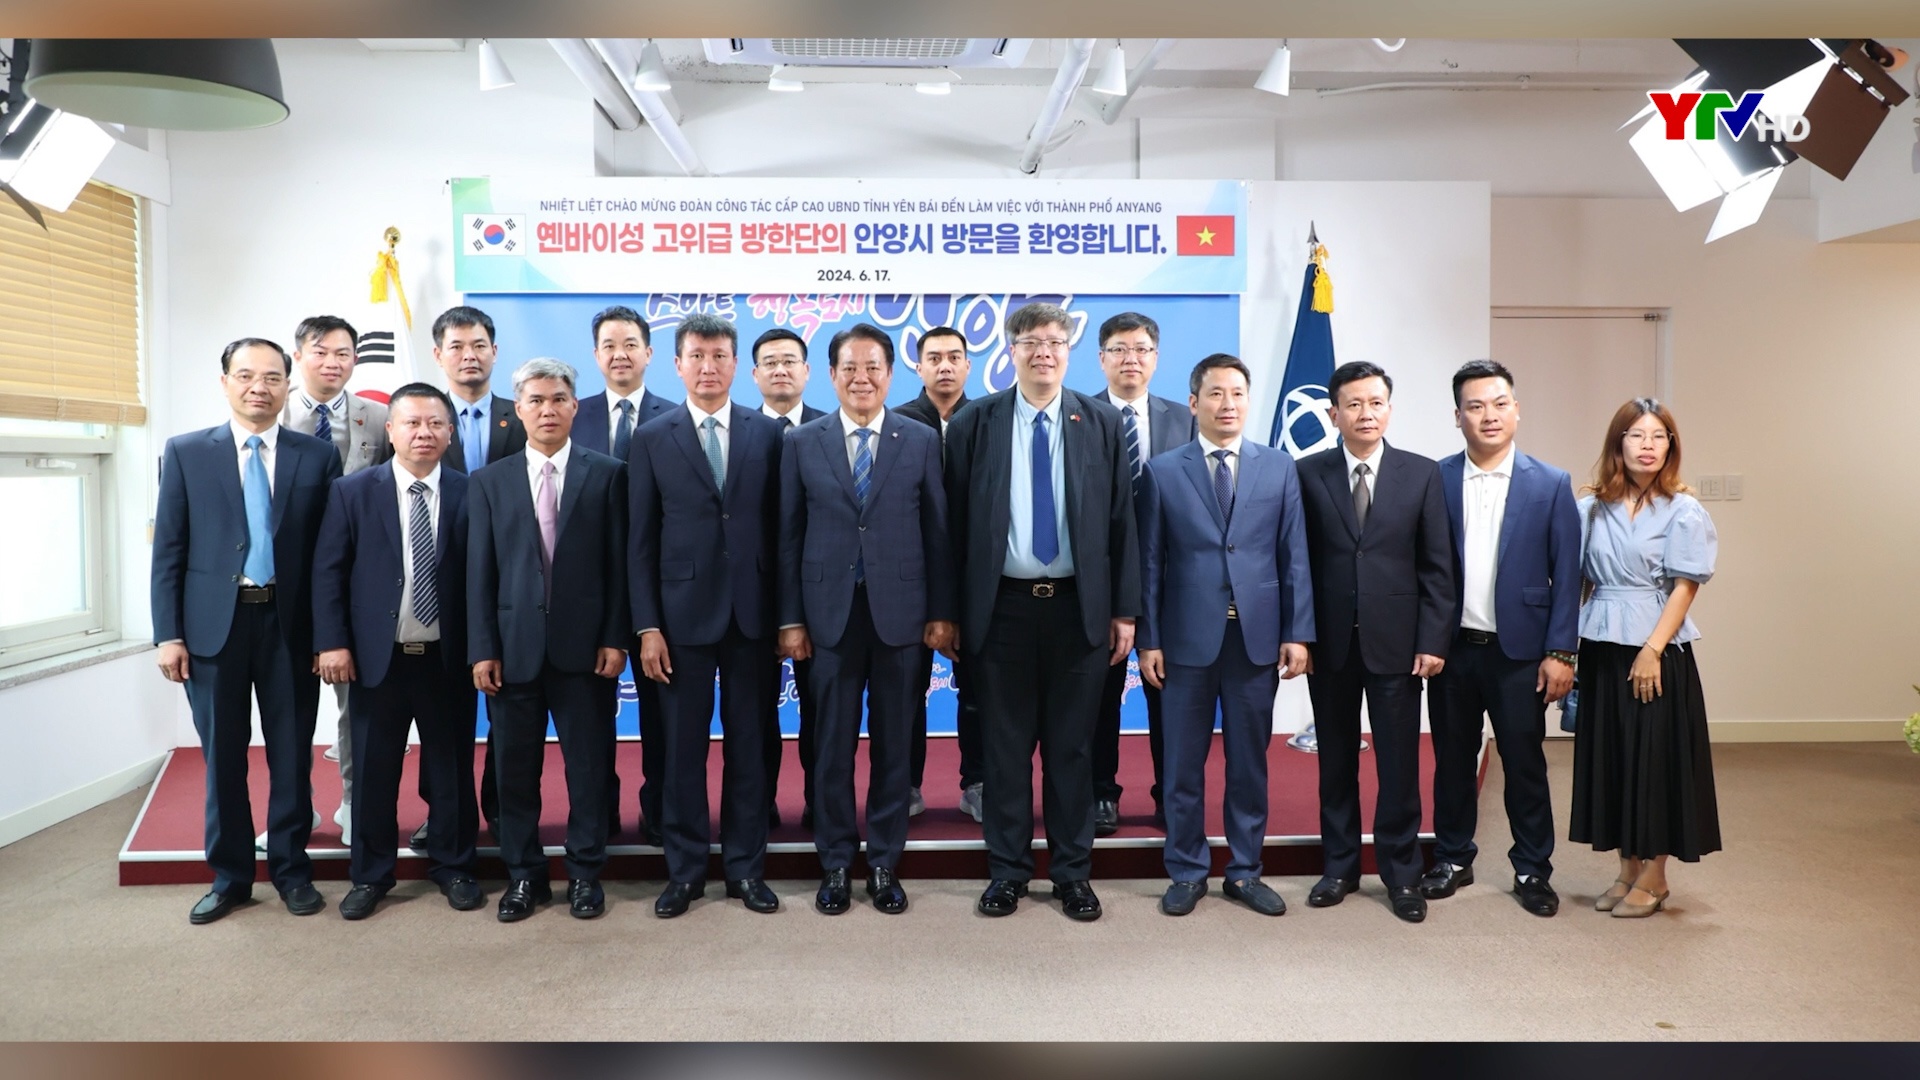 Đoàn công tác tỉnh Yên Bái thăm, làm việc tại thành phố Anyang, Hàn Quốc